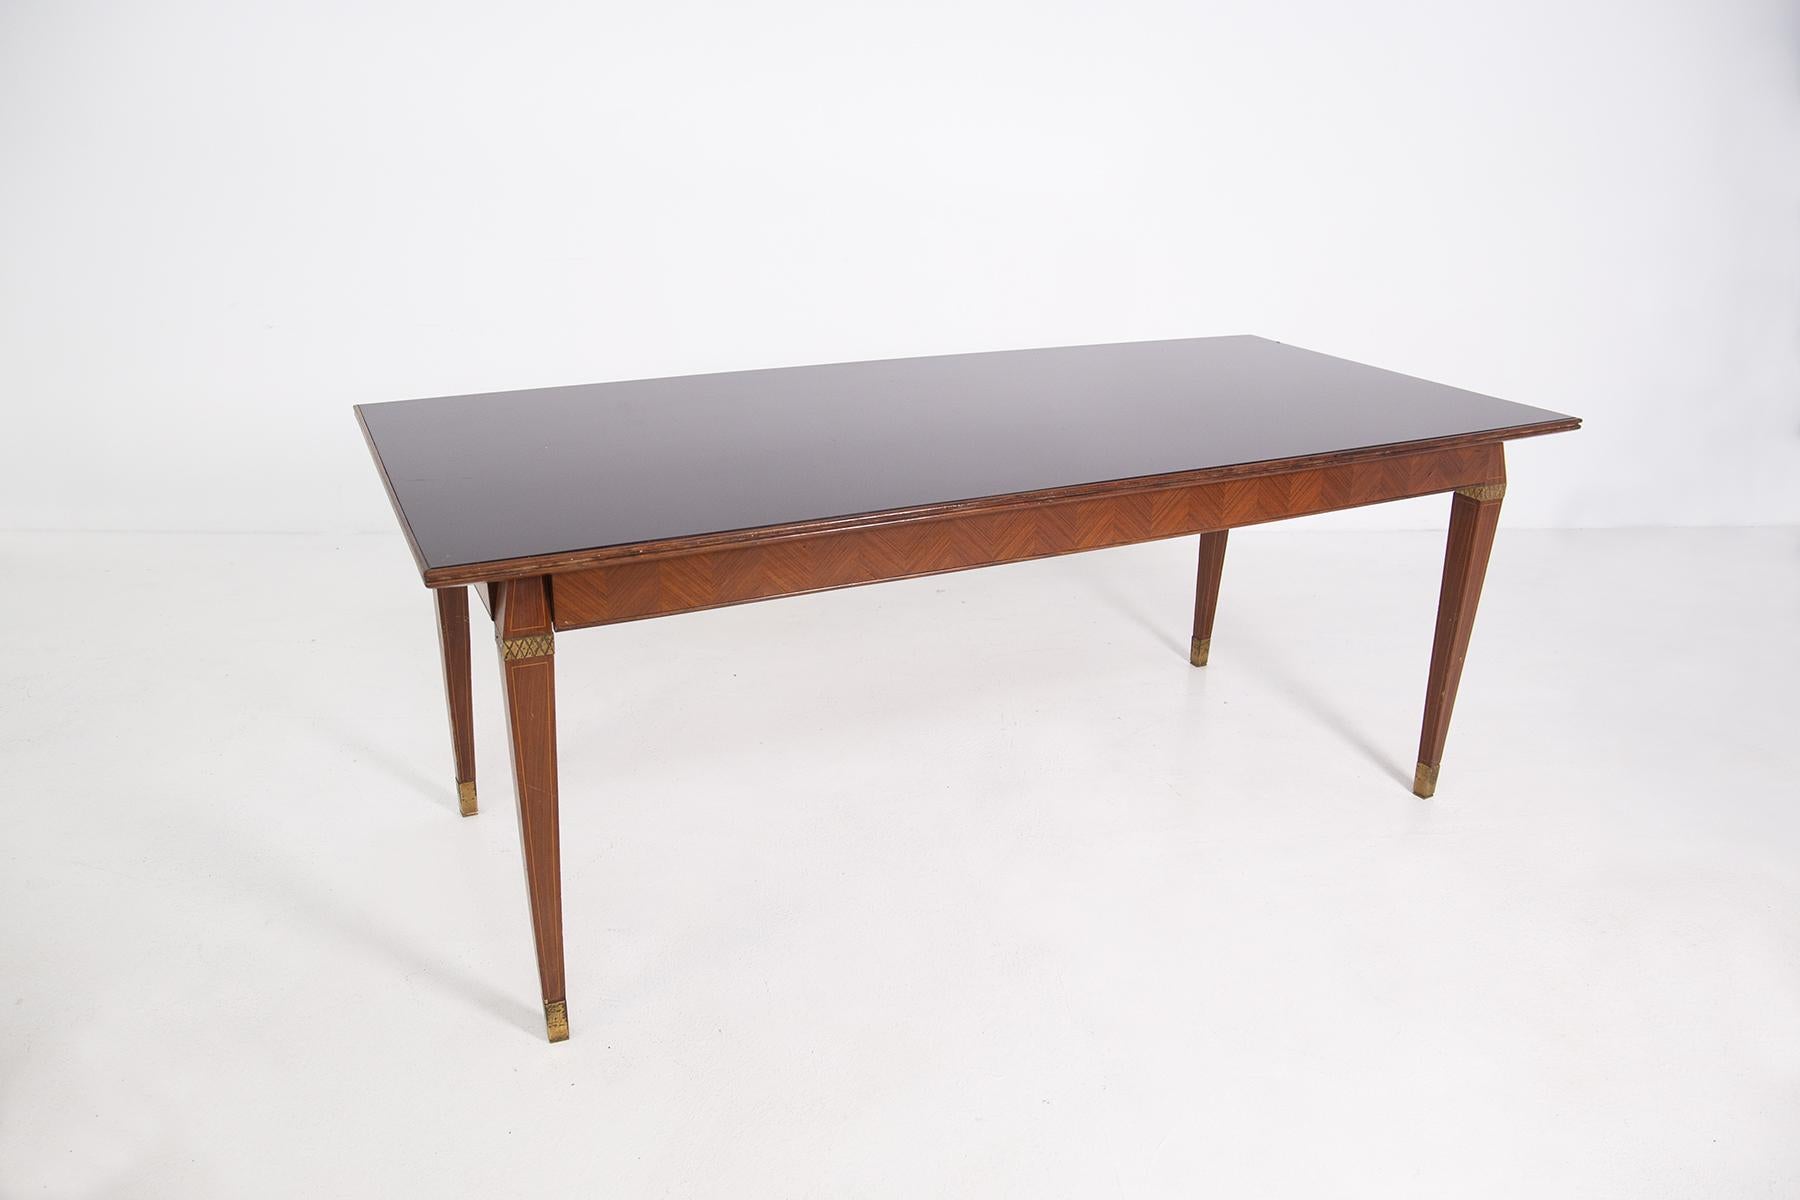 Table de salle à manger italienne dans le style de Paolo Buffa des années 1950.
La table présente des veines de bois et de petits éléments peints dans ses pieds.
Les pieds de la table ont une forme de prisme et le dernier élément est une virole en